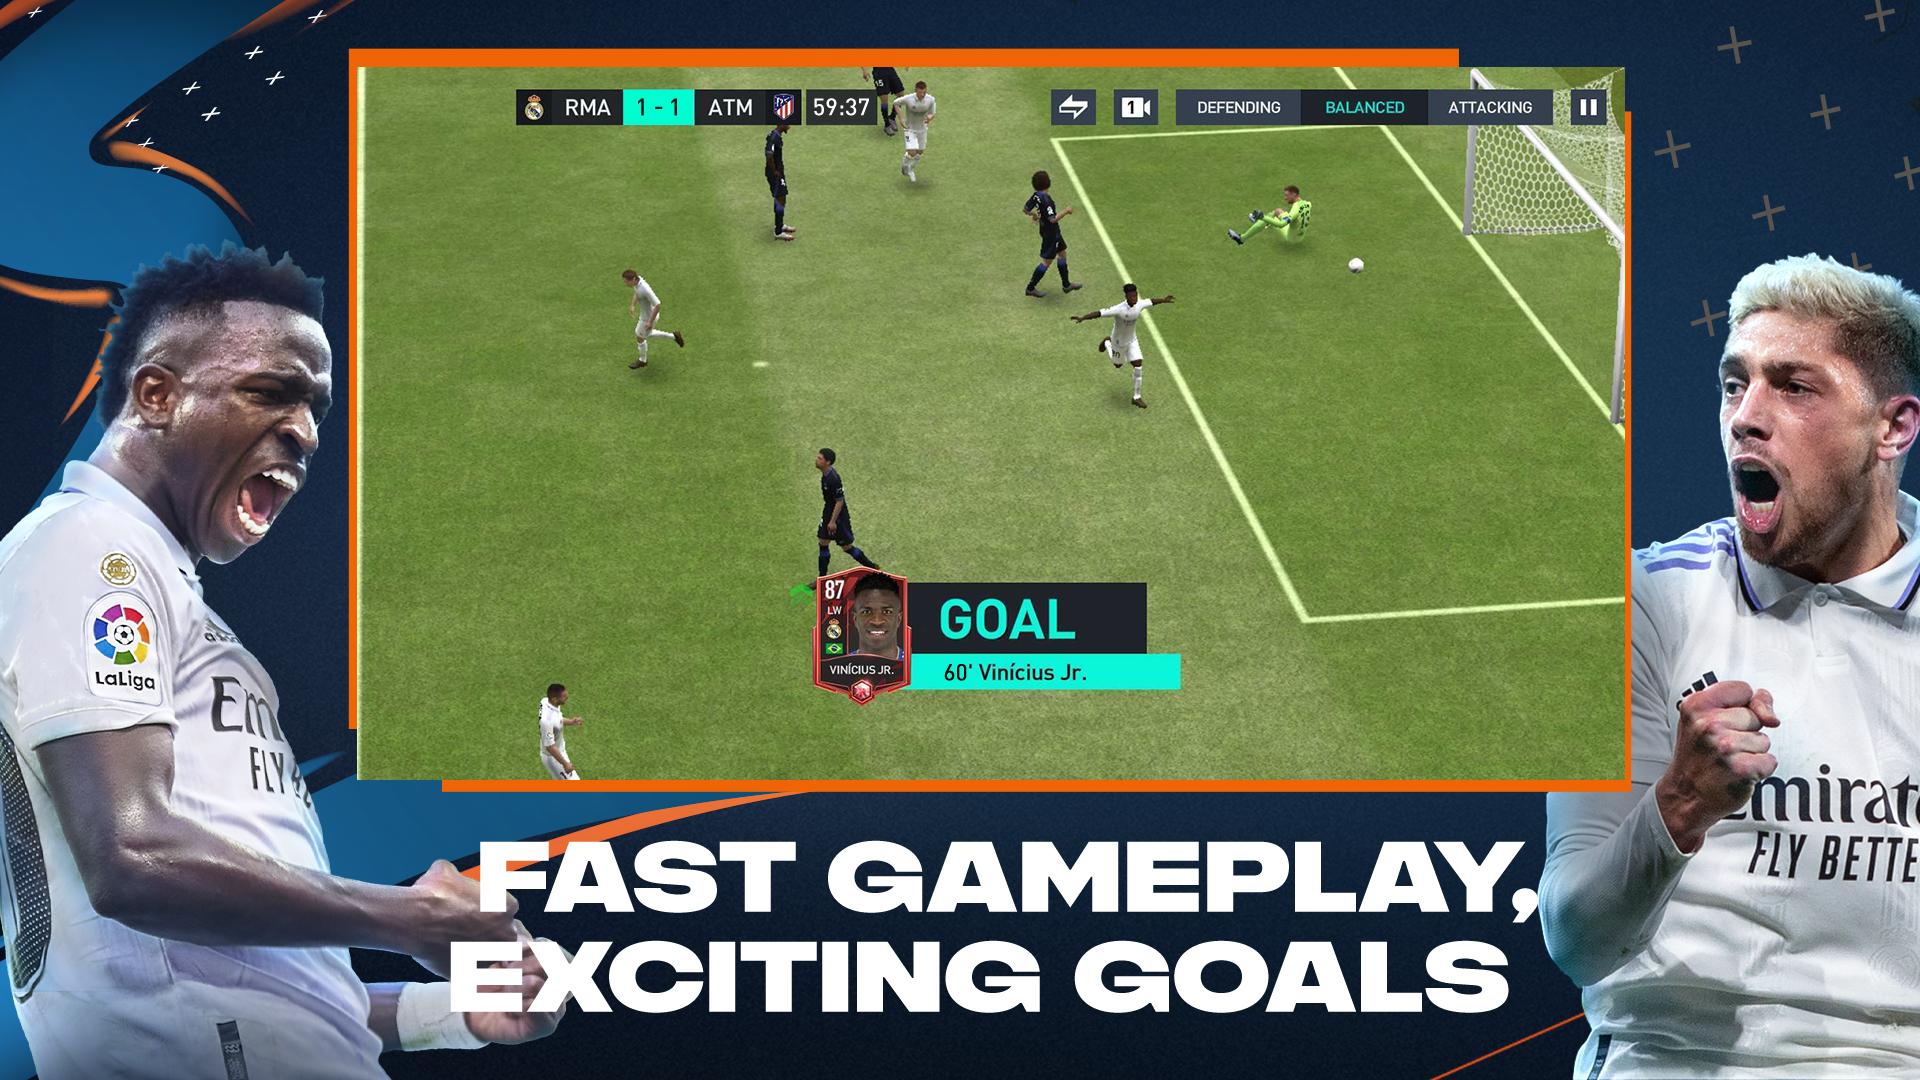 Como jogar FIFA Futebol no PC com Emulador Android